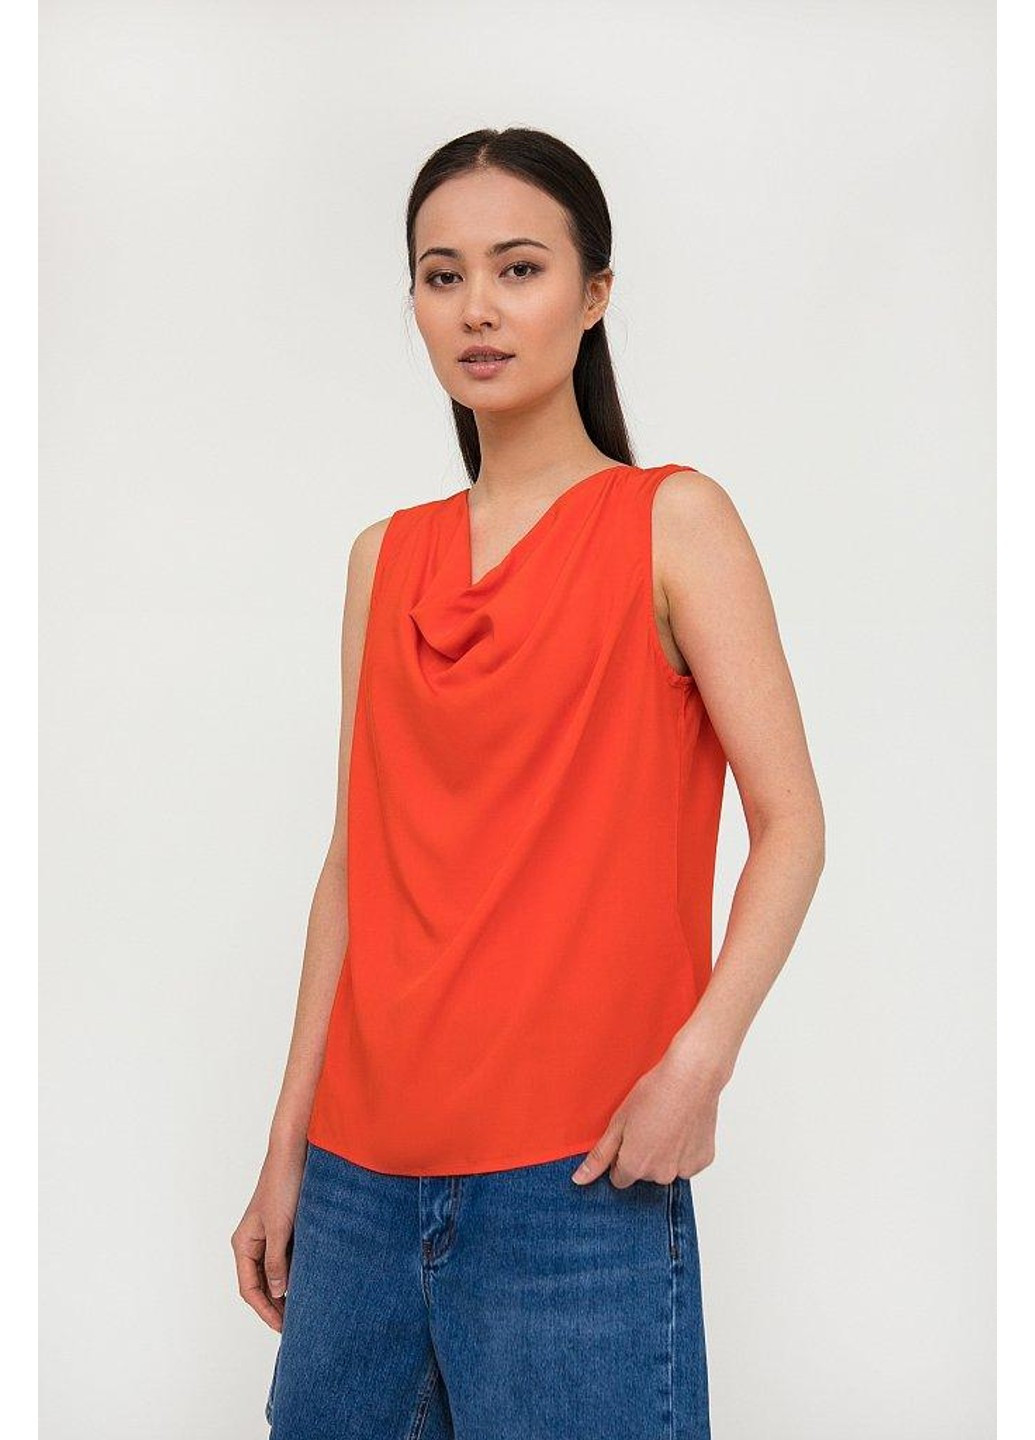 Червона літня блуза s20-14015-420 Finn Flare